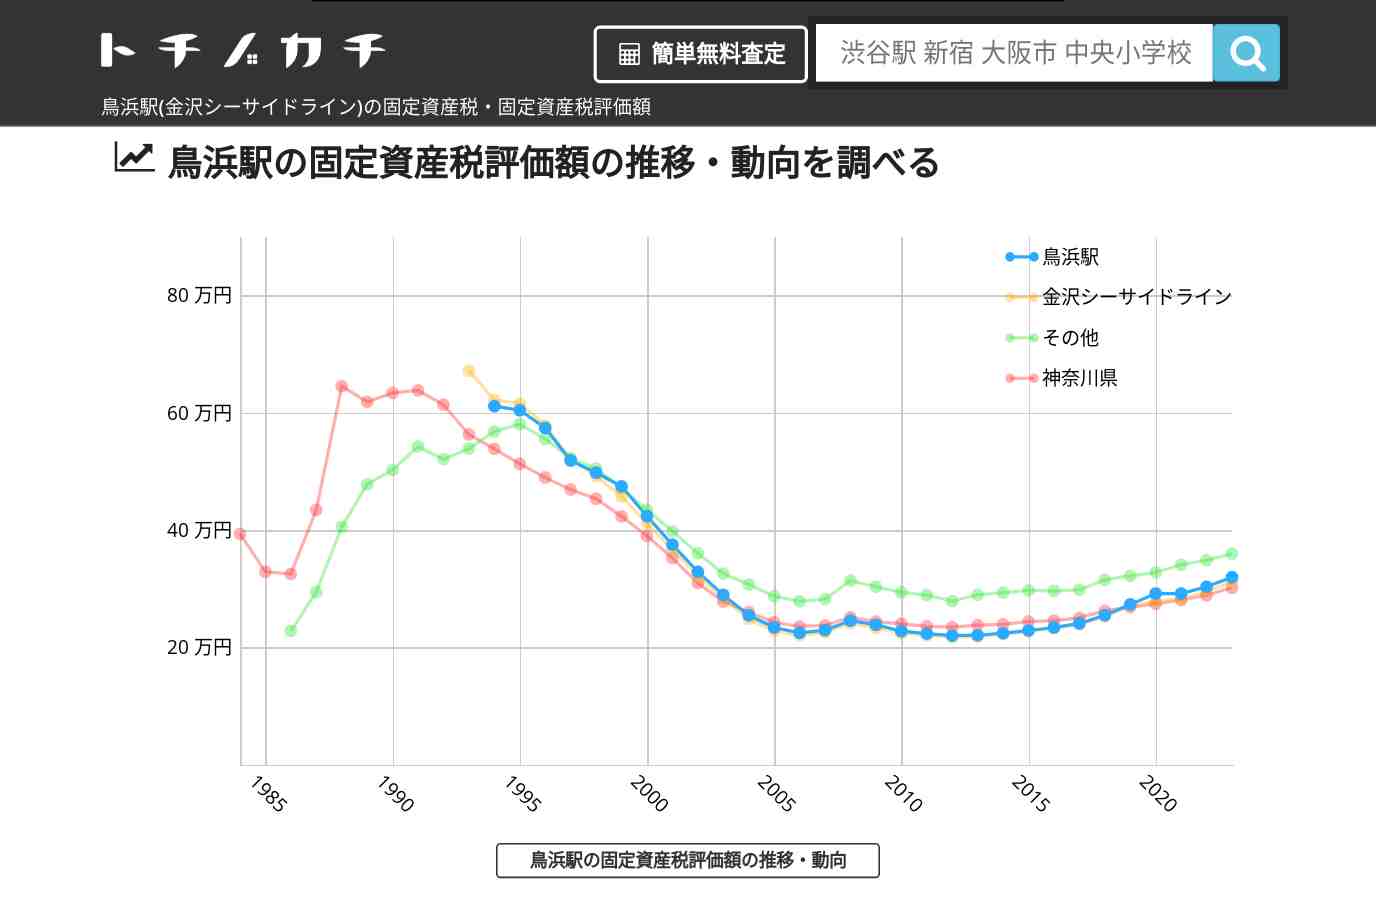 鳥浜駅(金沢シーサイドライン)の固定資産税・固定資産税評価額 | トチノカチ